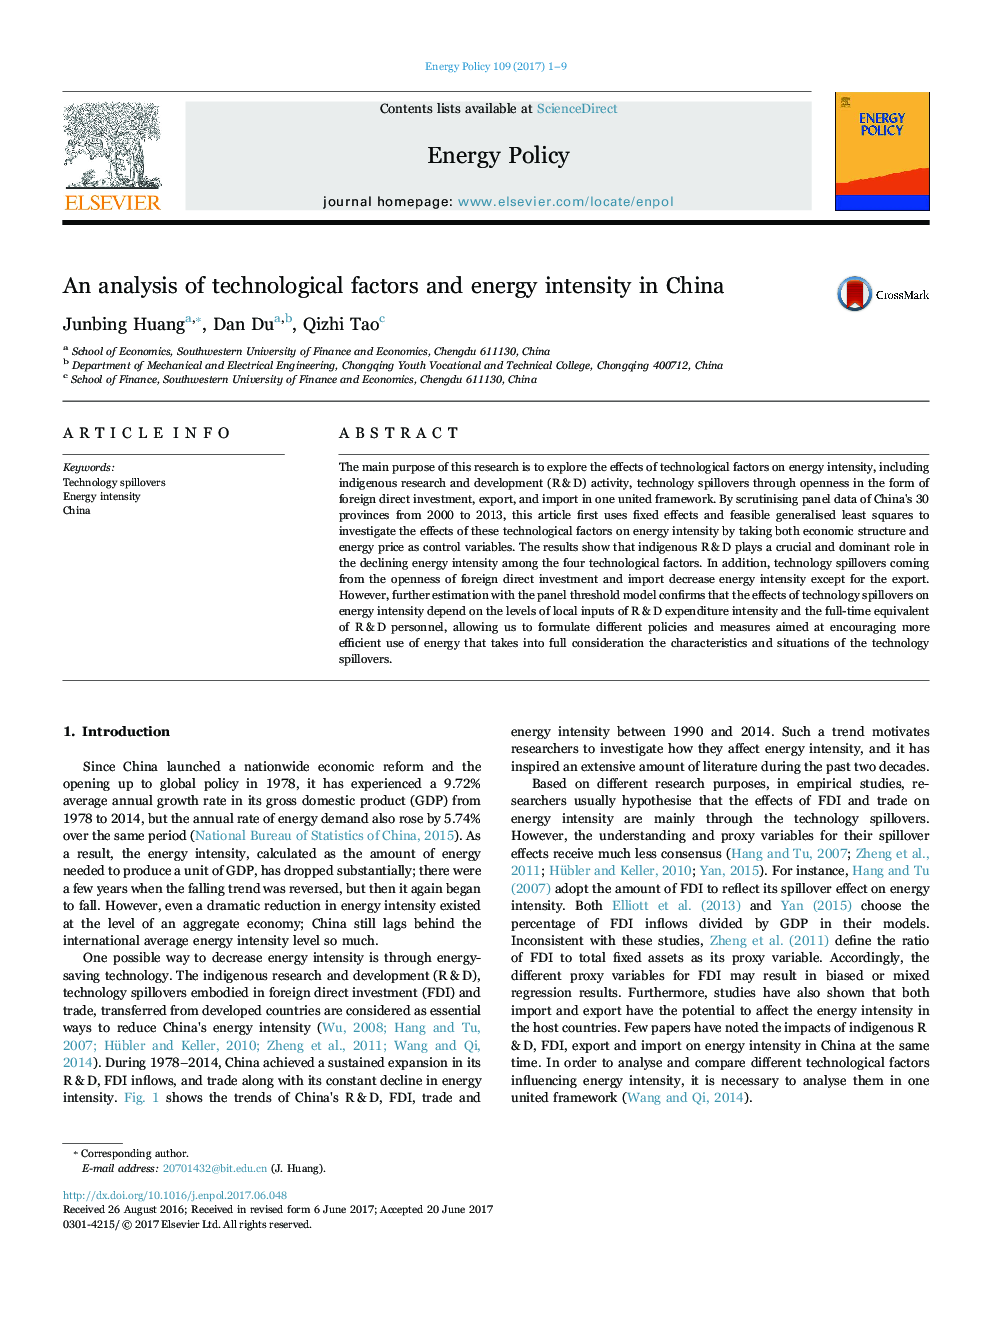 تجزیه و تحلیل عوامل تکنولوژیکی و شدت انرژی در چین 